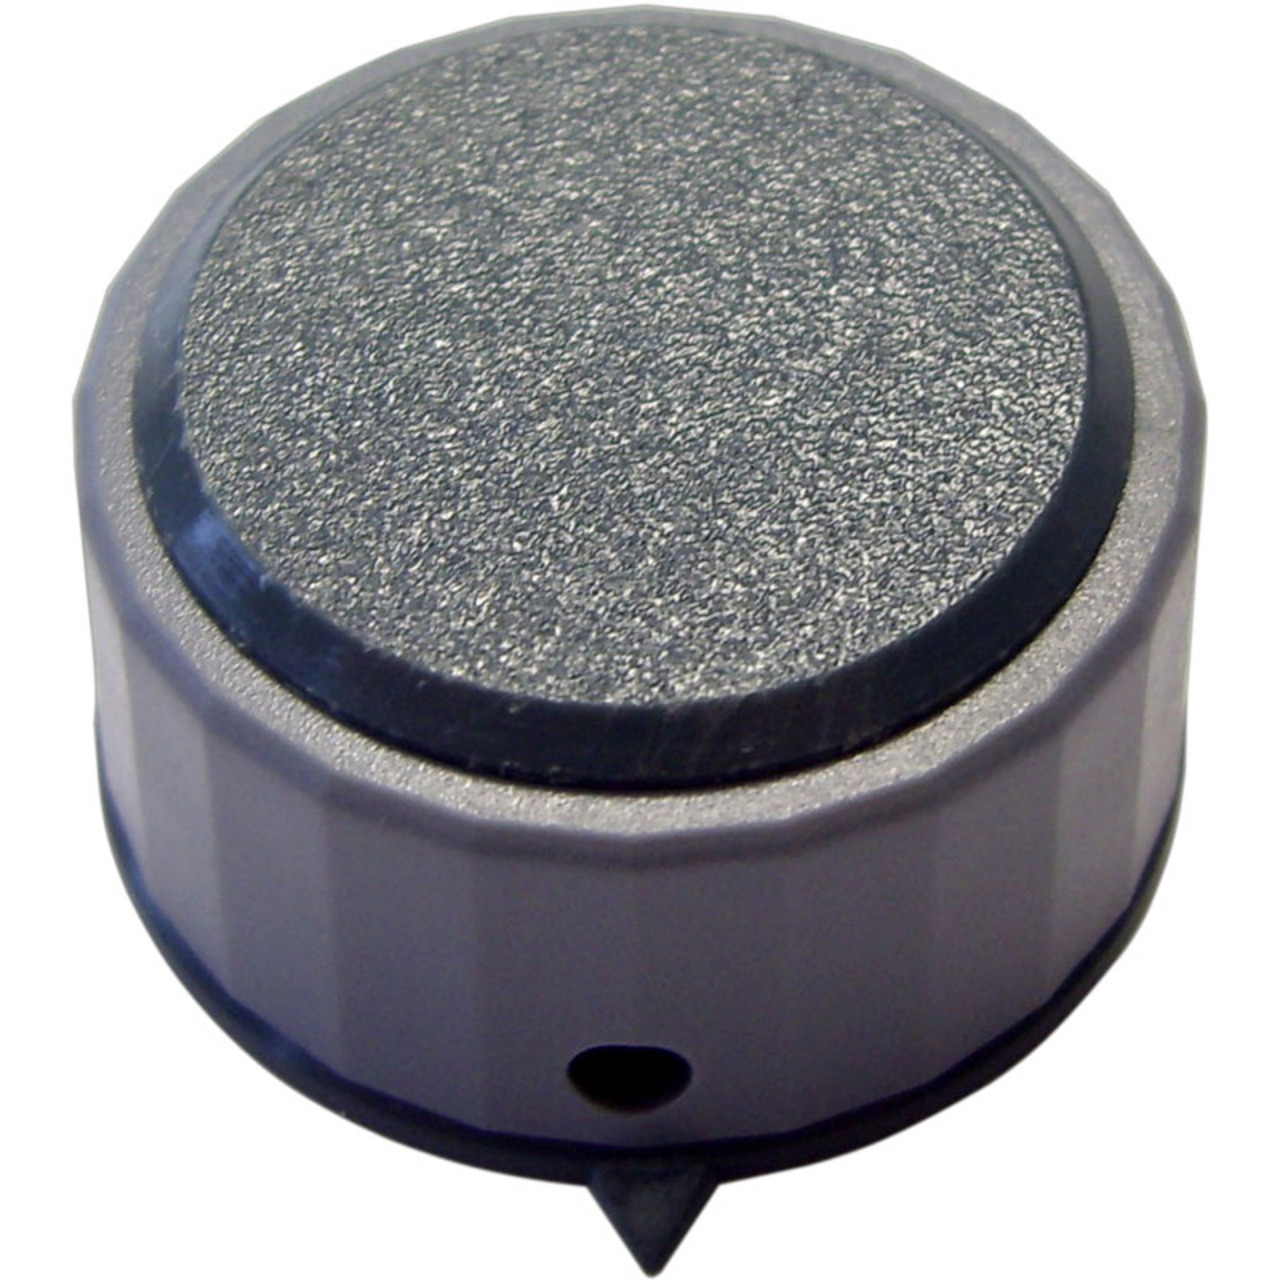 Kunststoff-Drehknopf- Knopfdurchmesser: 29 mm unter Komponenten